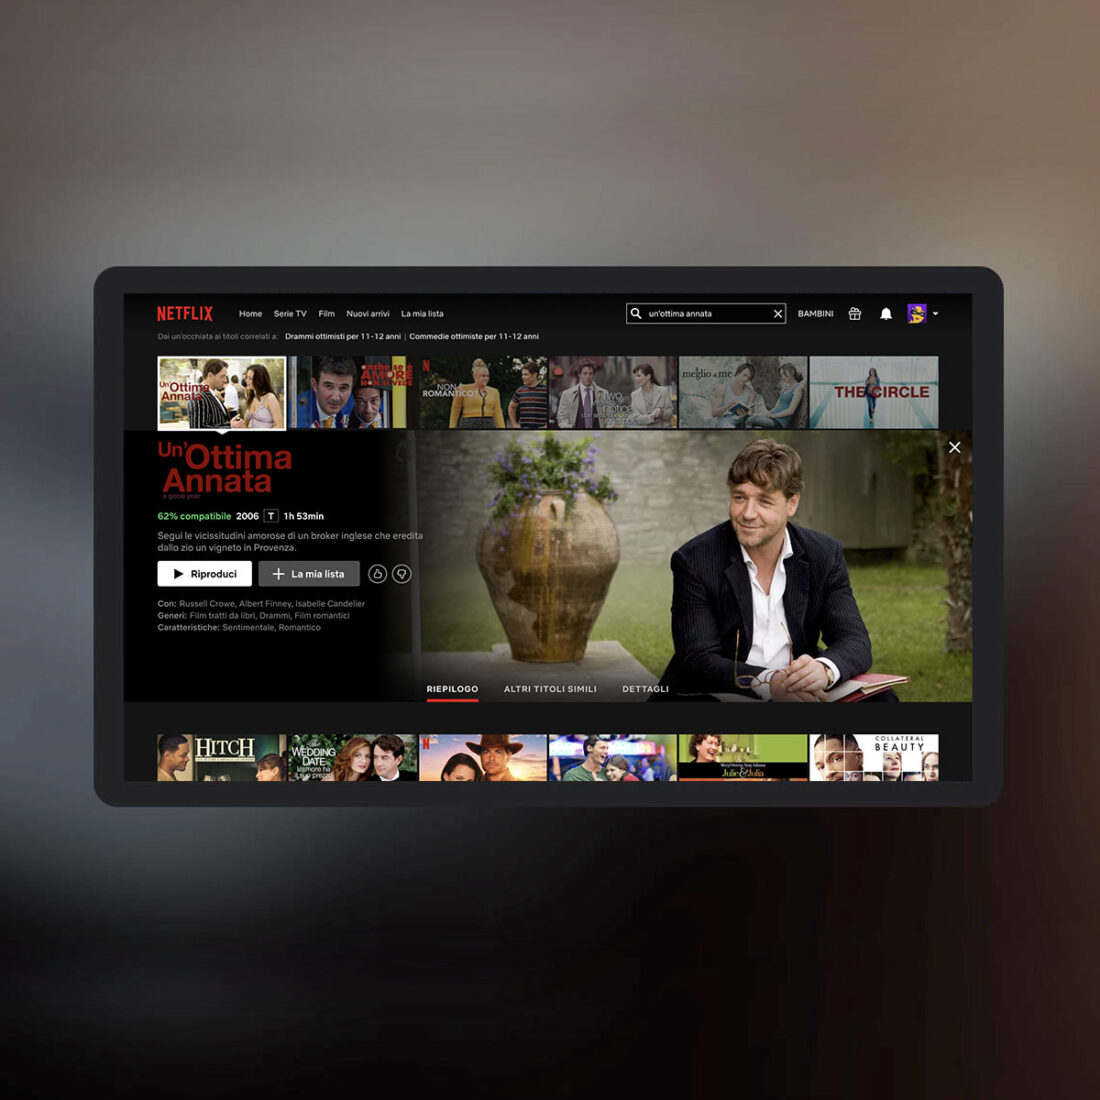 Schermo TV con Netflix e selezione del film Un'ottima annata